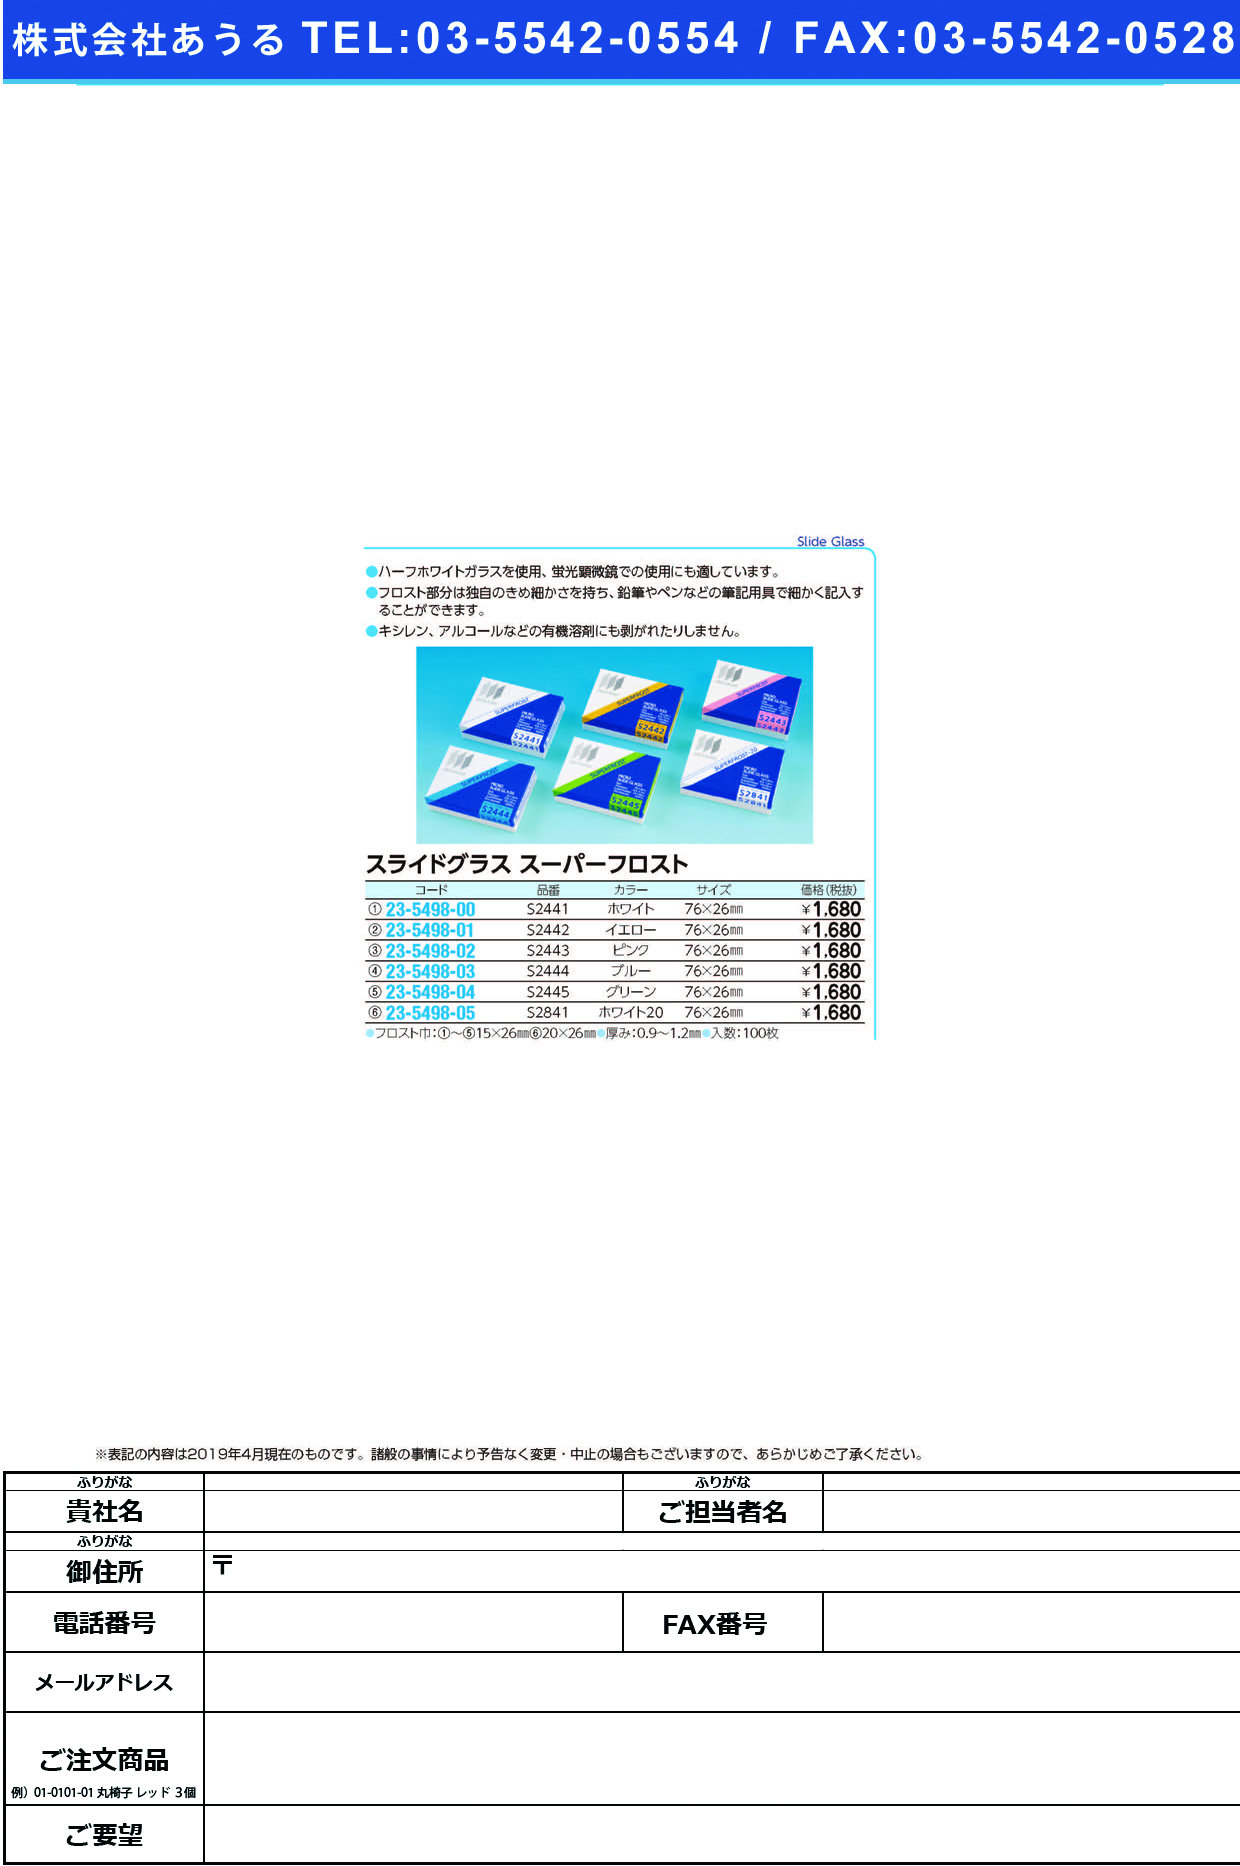 (23-5498-02)松浪スライドグラススーパーフロスト S2443(ﾋﾟﾝｸ)100ﾏｲ ﾏﾂﾅﾐｽﾗｲﾄﾞｸﾞﾗｽｽｰﾊﾟｰﾌﾛ【1箱単位】【2019年カタログ商品】